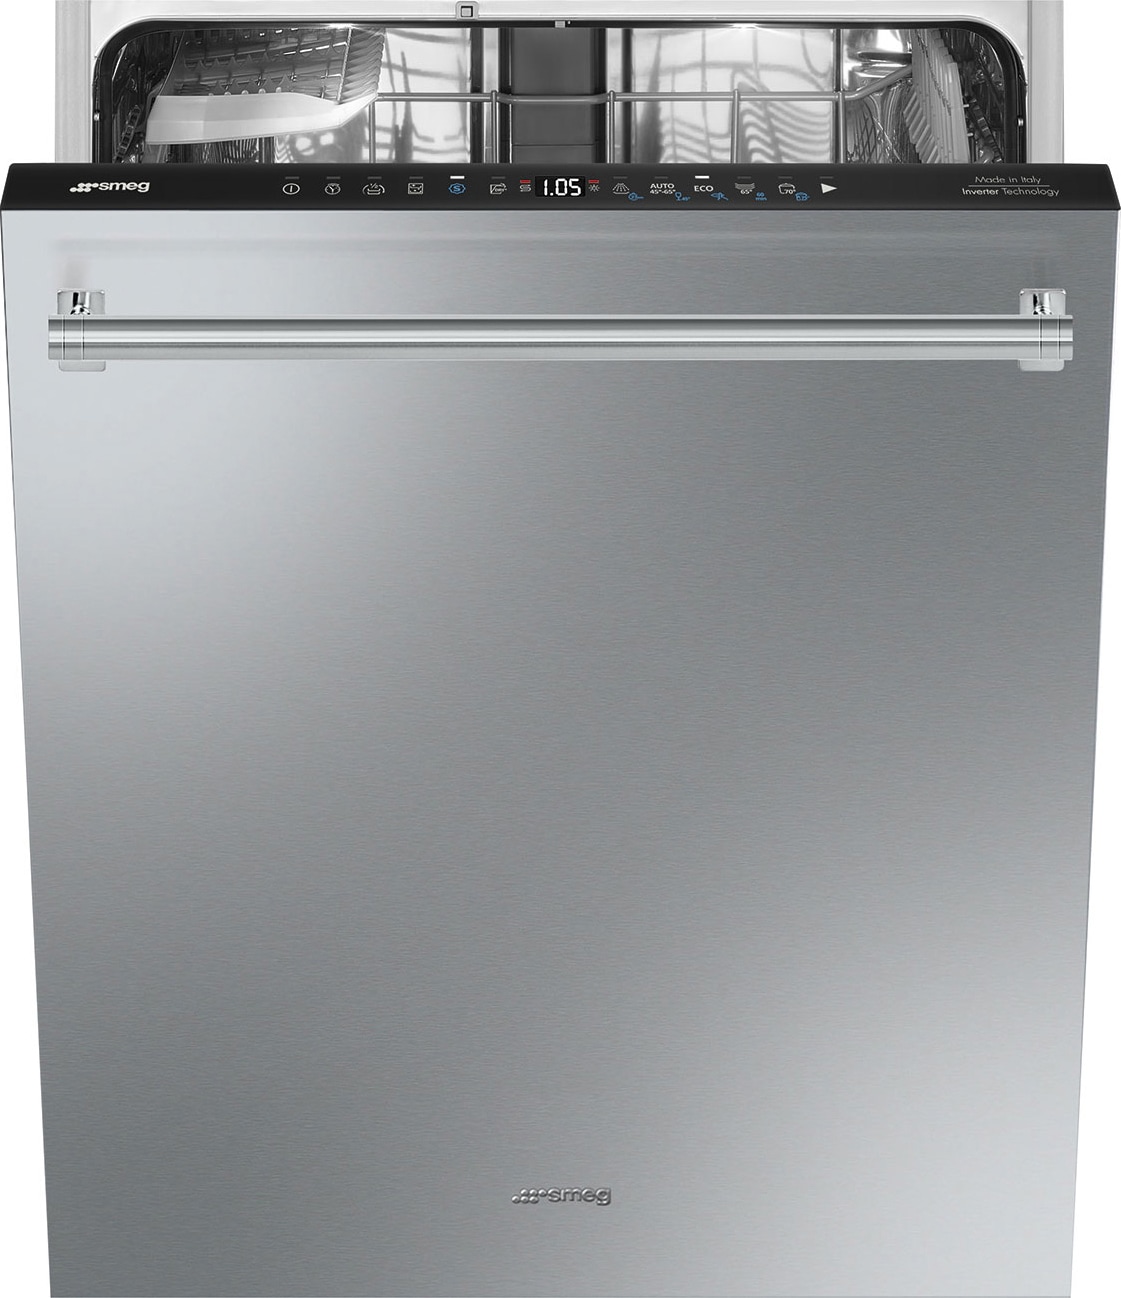 Smeg opvaskemaskine STX235CLLO (rustfri stål)